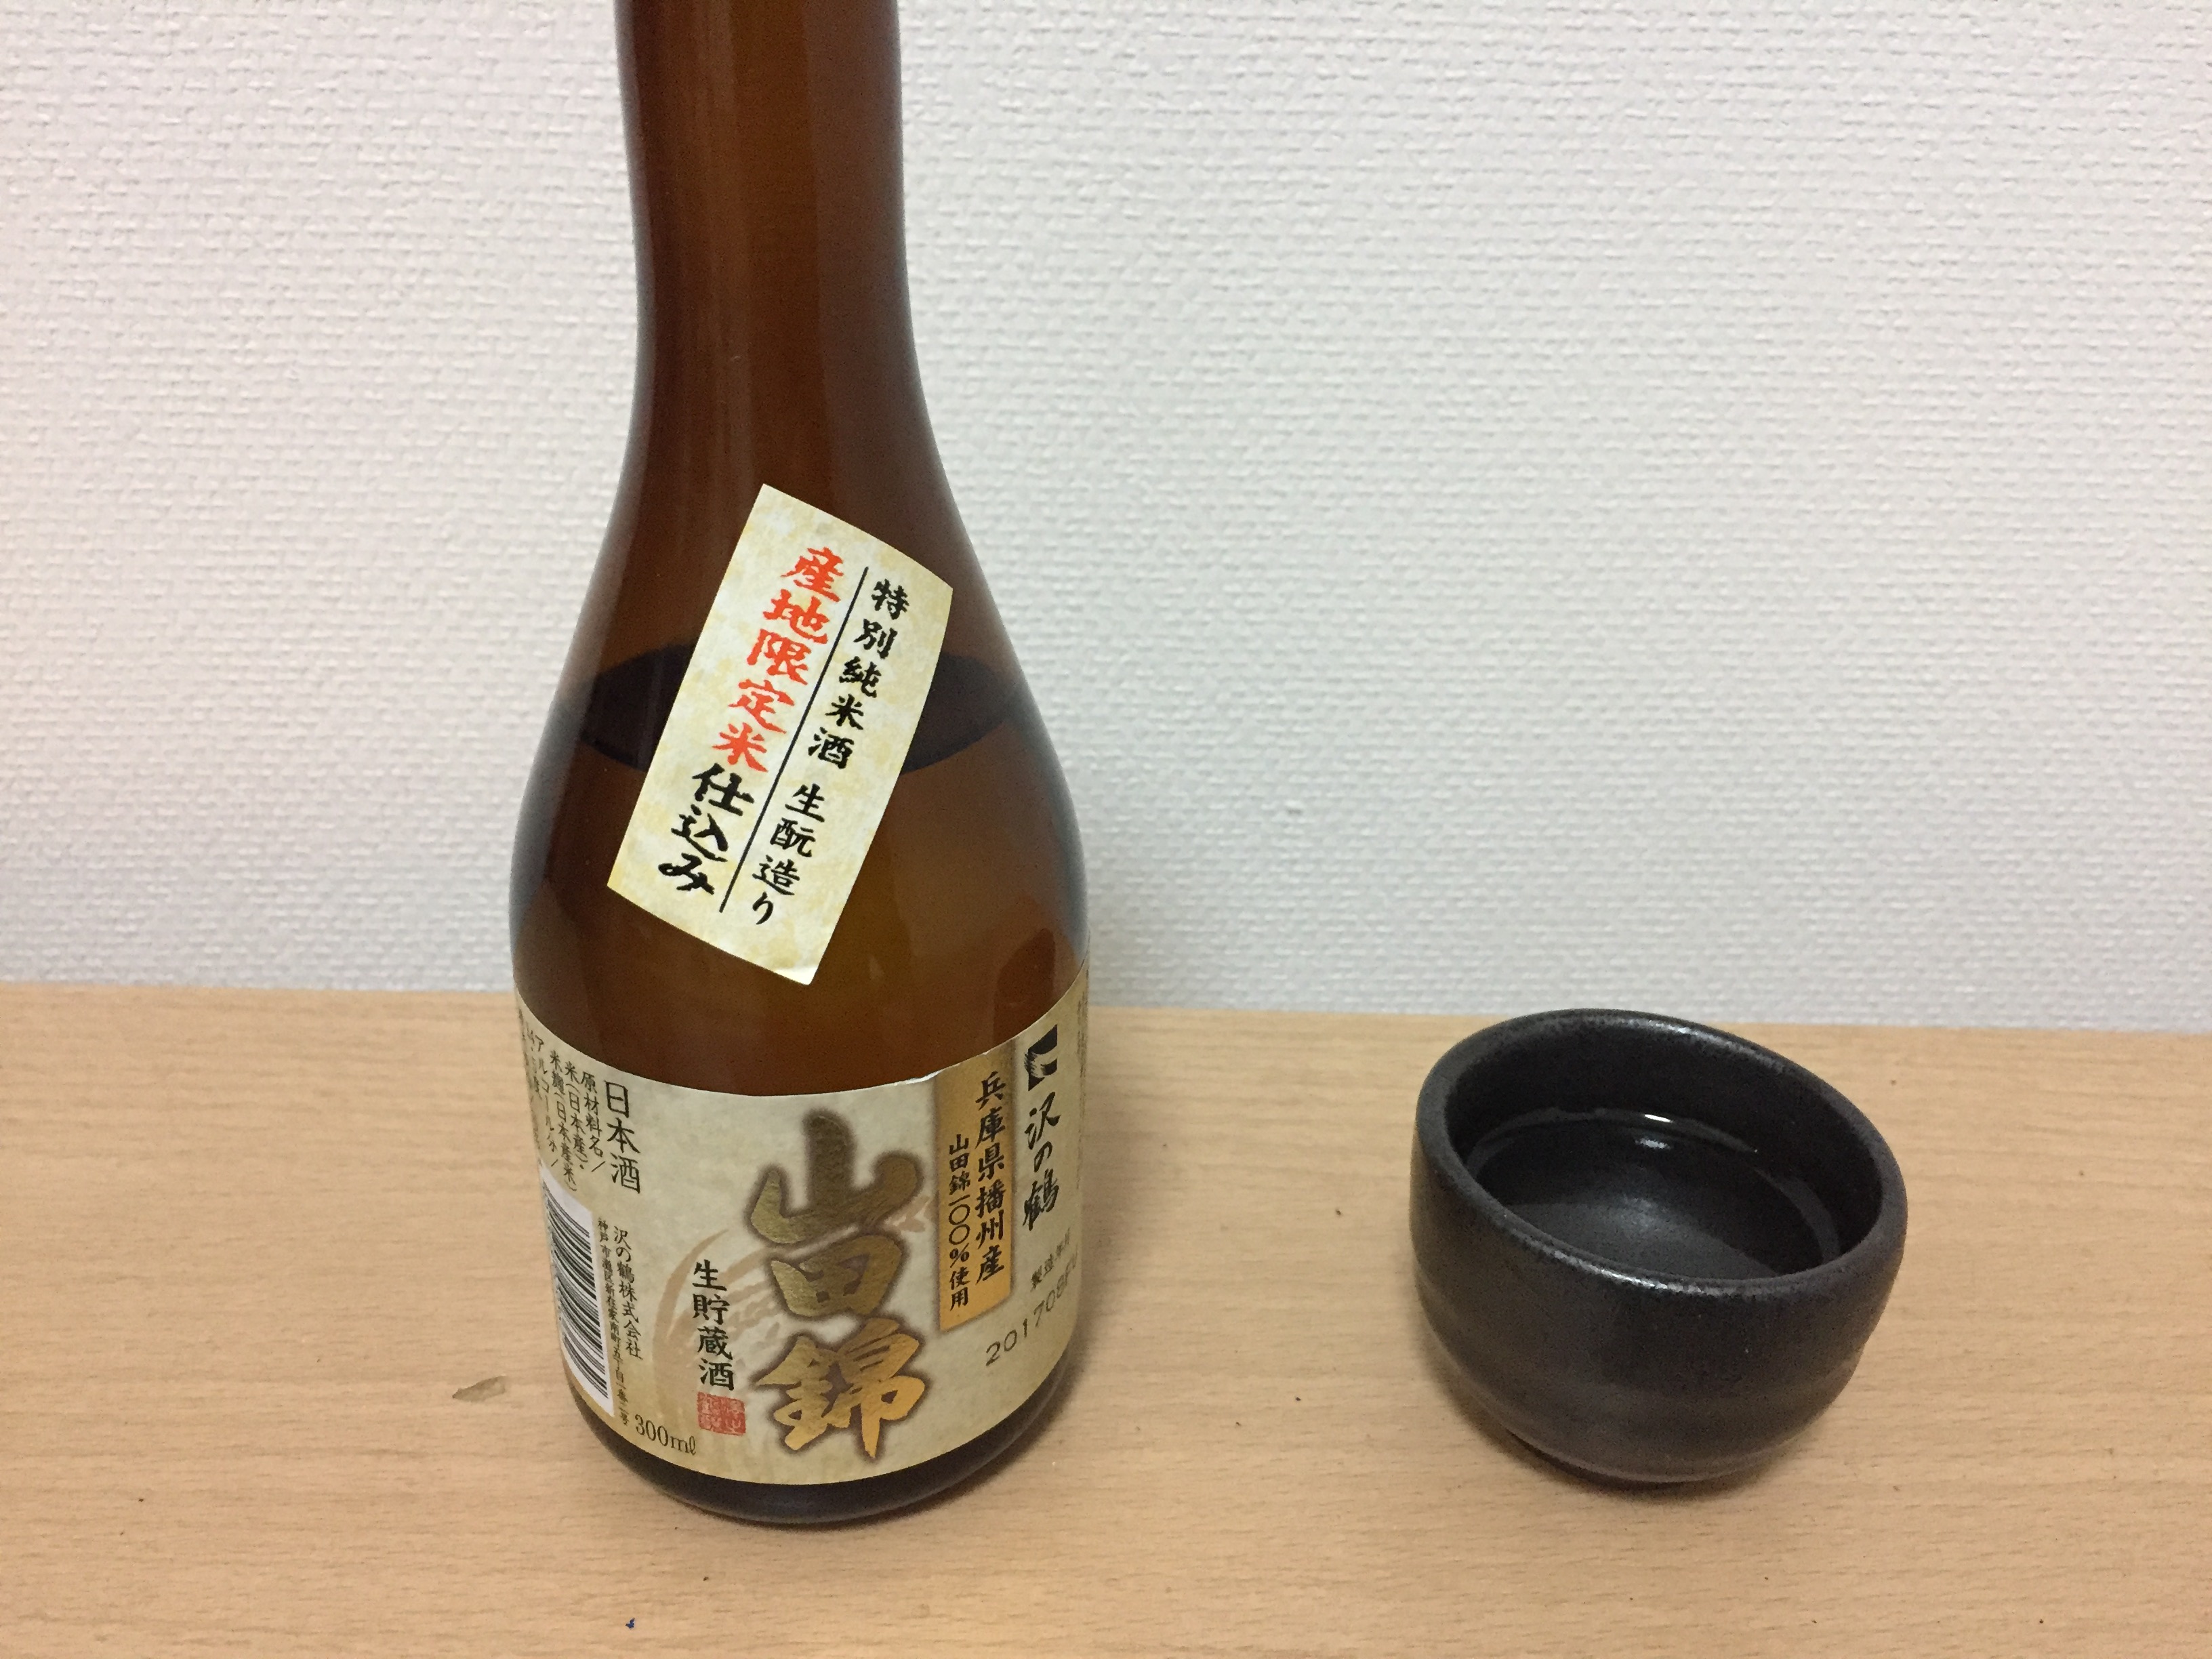 沢の鶴 兵庫県播州産山田錦生貯蔵酒 をグラスに注ぐ